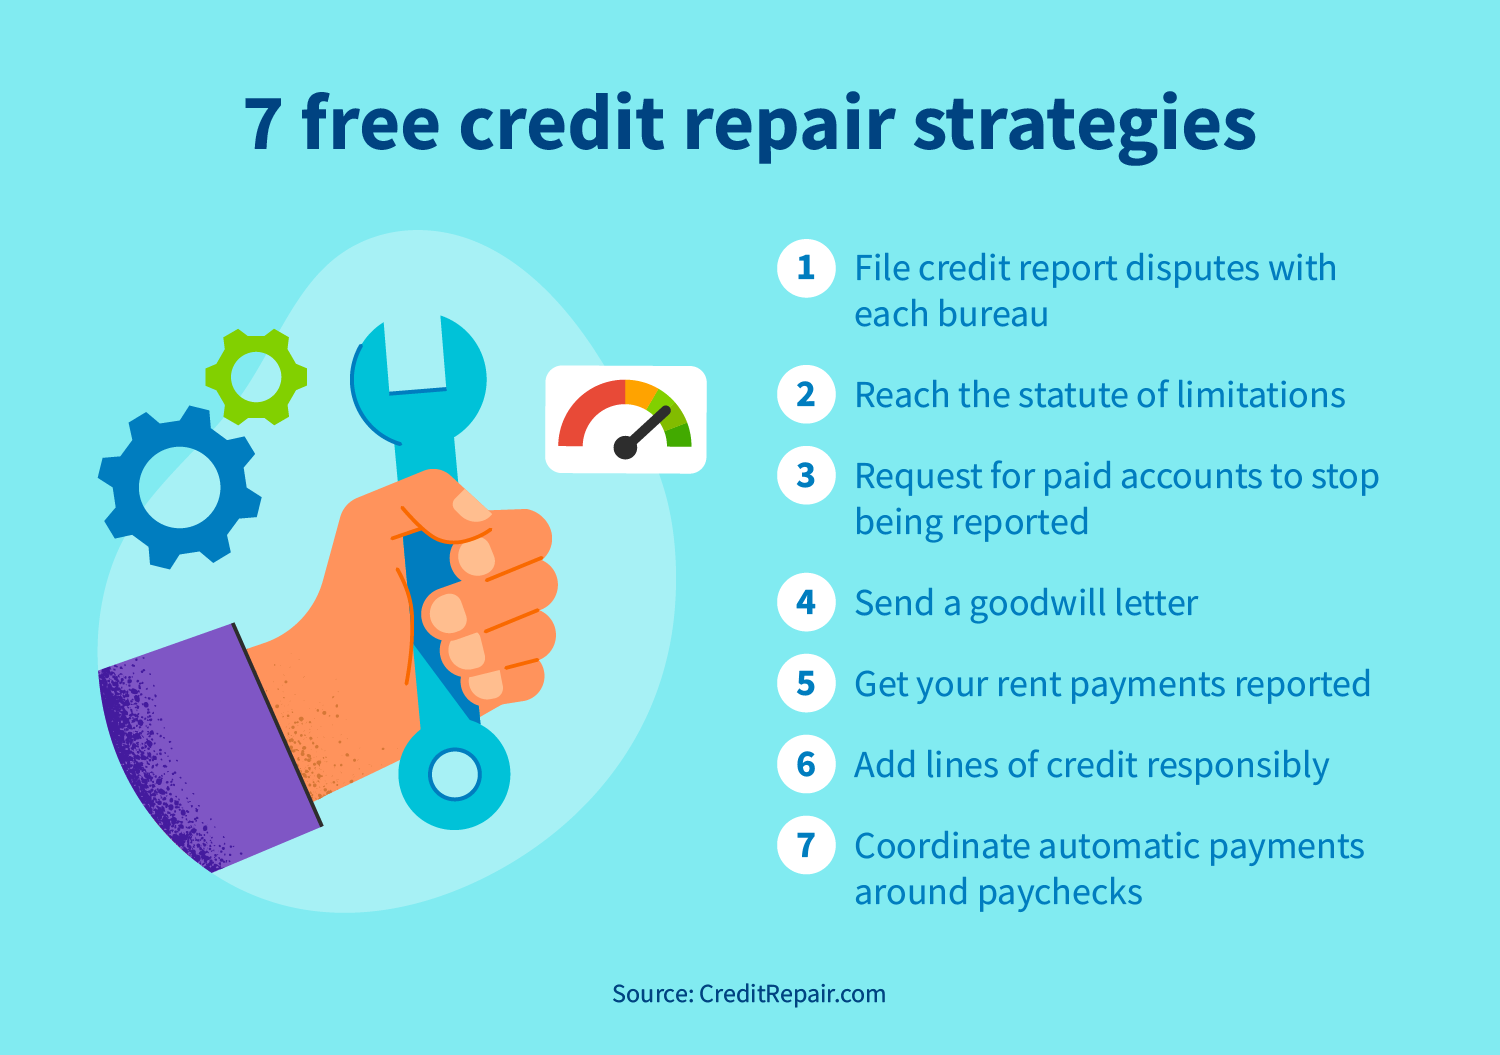 Credit repair strategies